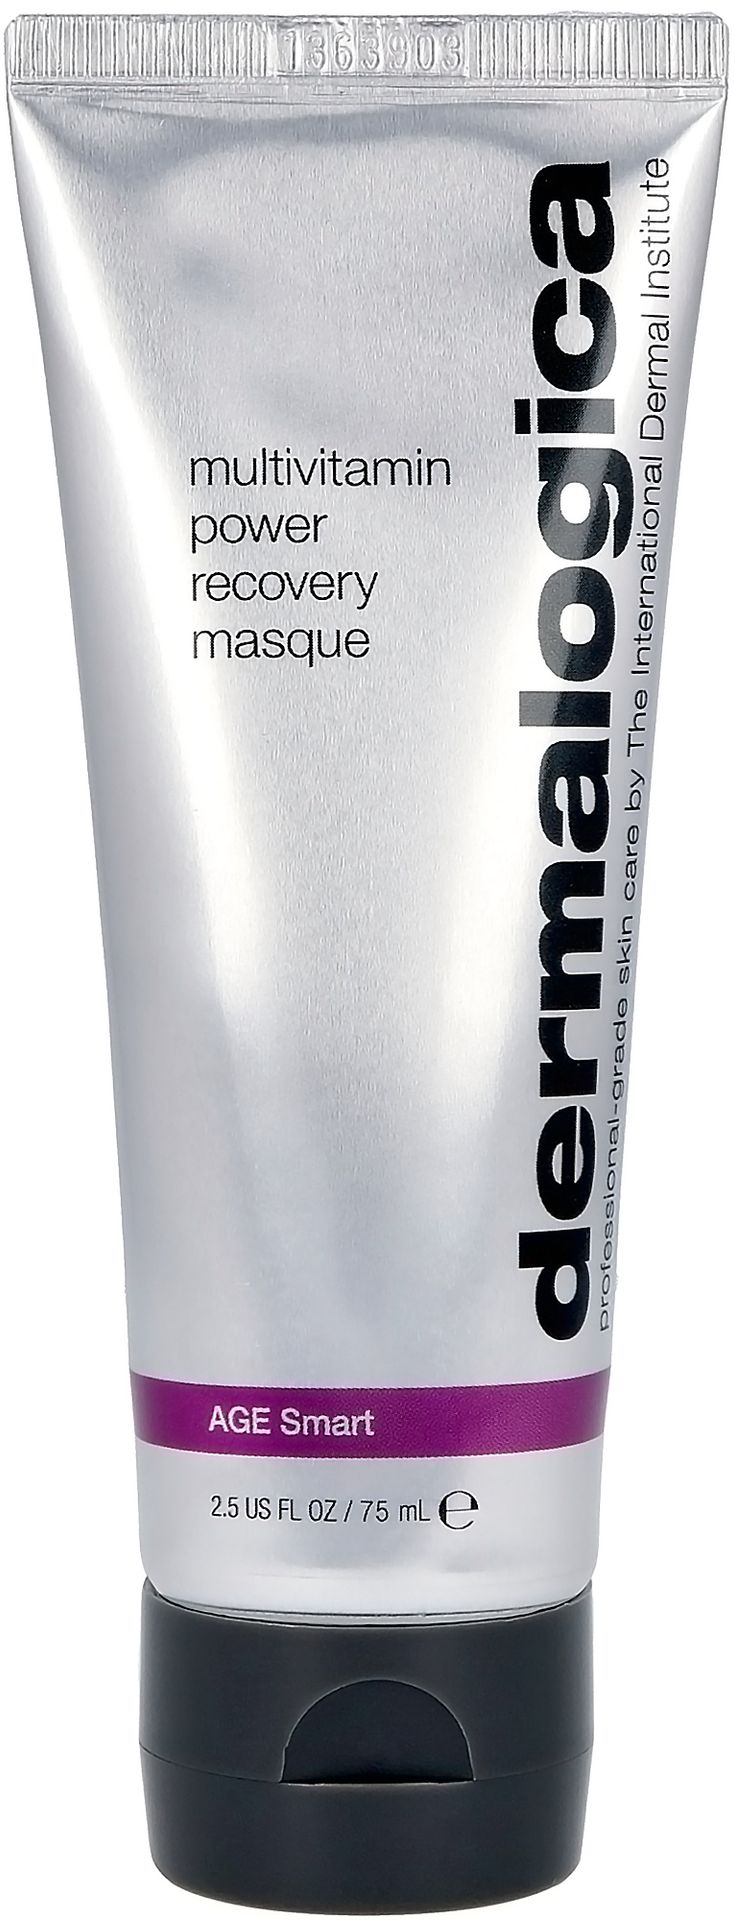 Dermalogica Age Smart MultiVitamin Power Recovery Masque Maska o działaniu silnie rewitalizującym 75 ml